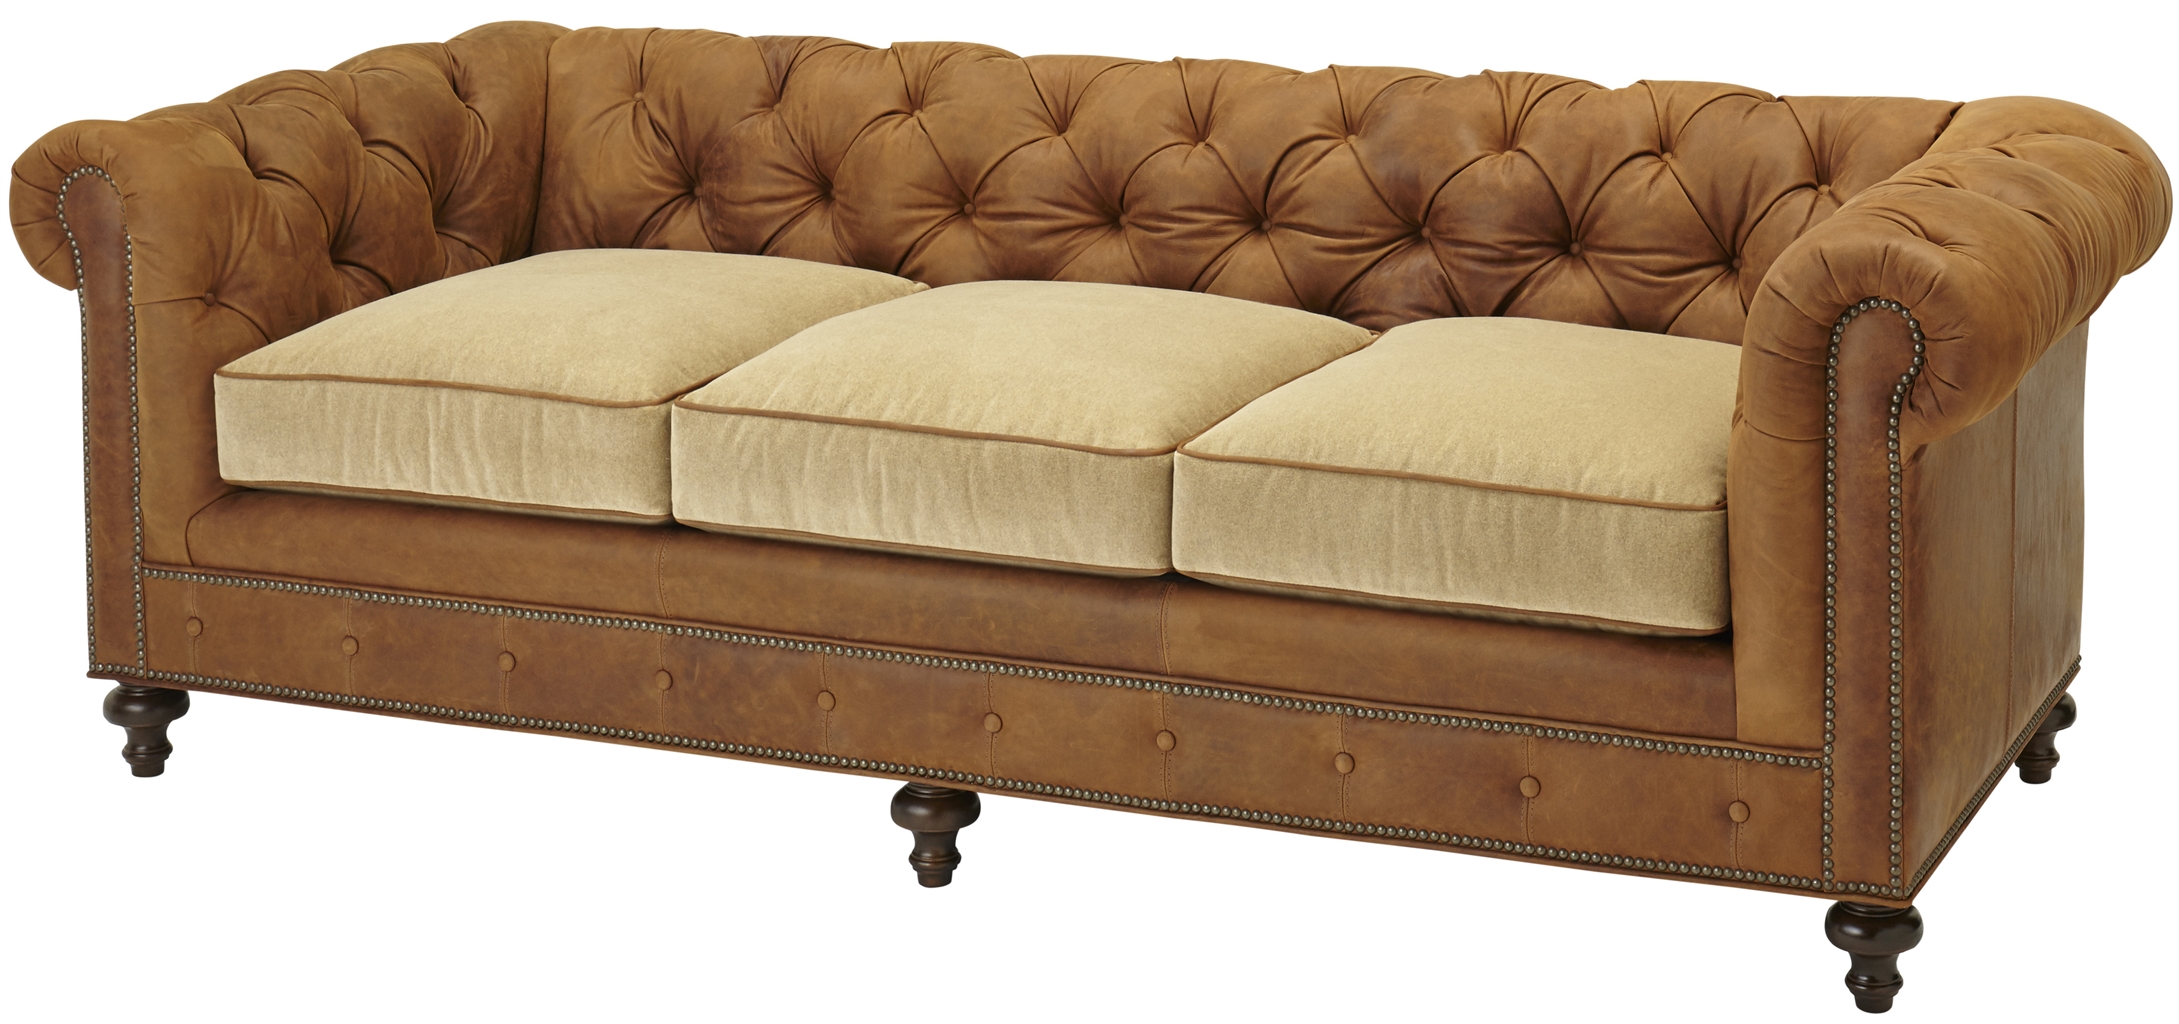 SOFA, COUCH & LOVESEAT Elegant Tufted Sofa